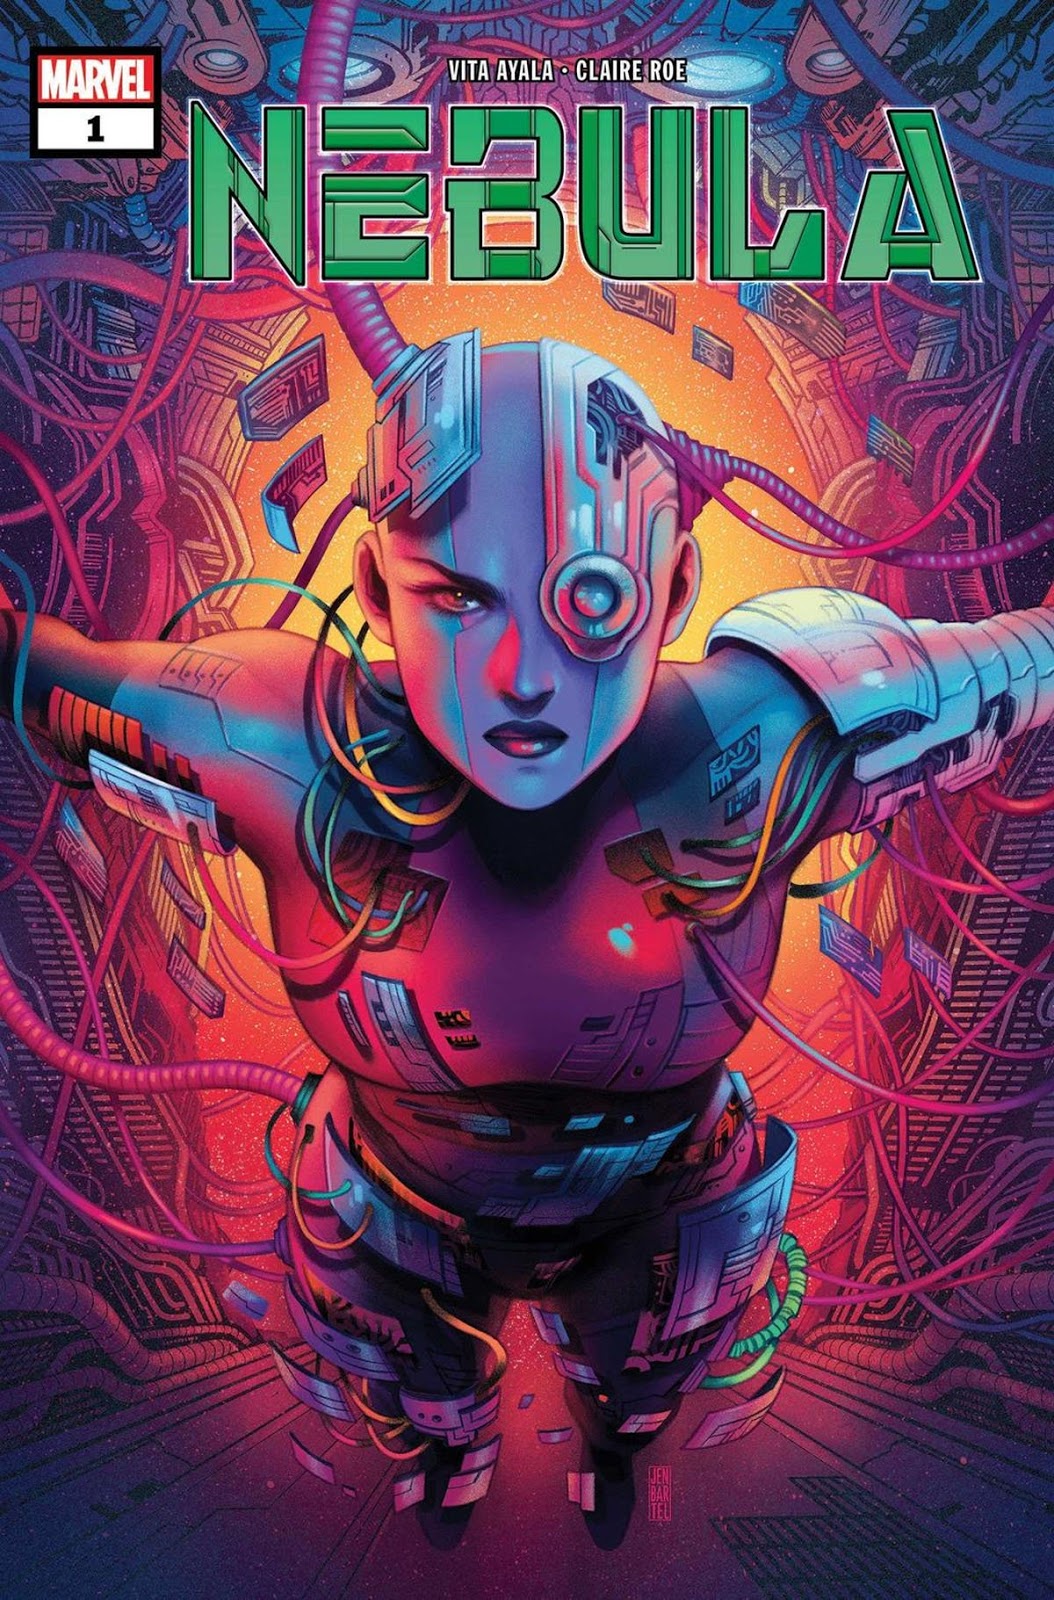 Nebula #1 llegará a las tiendas de cómics en febrero de 2020.